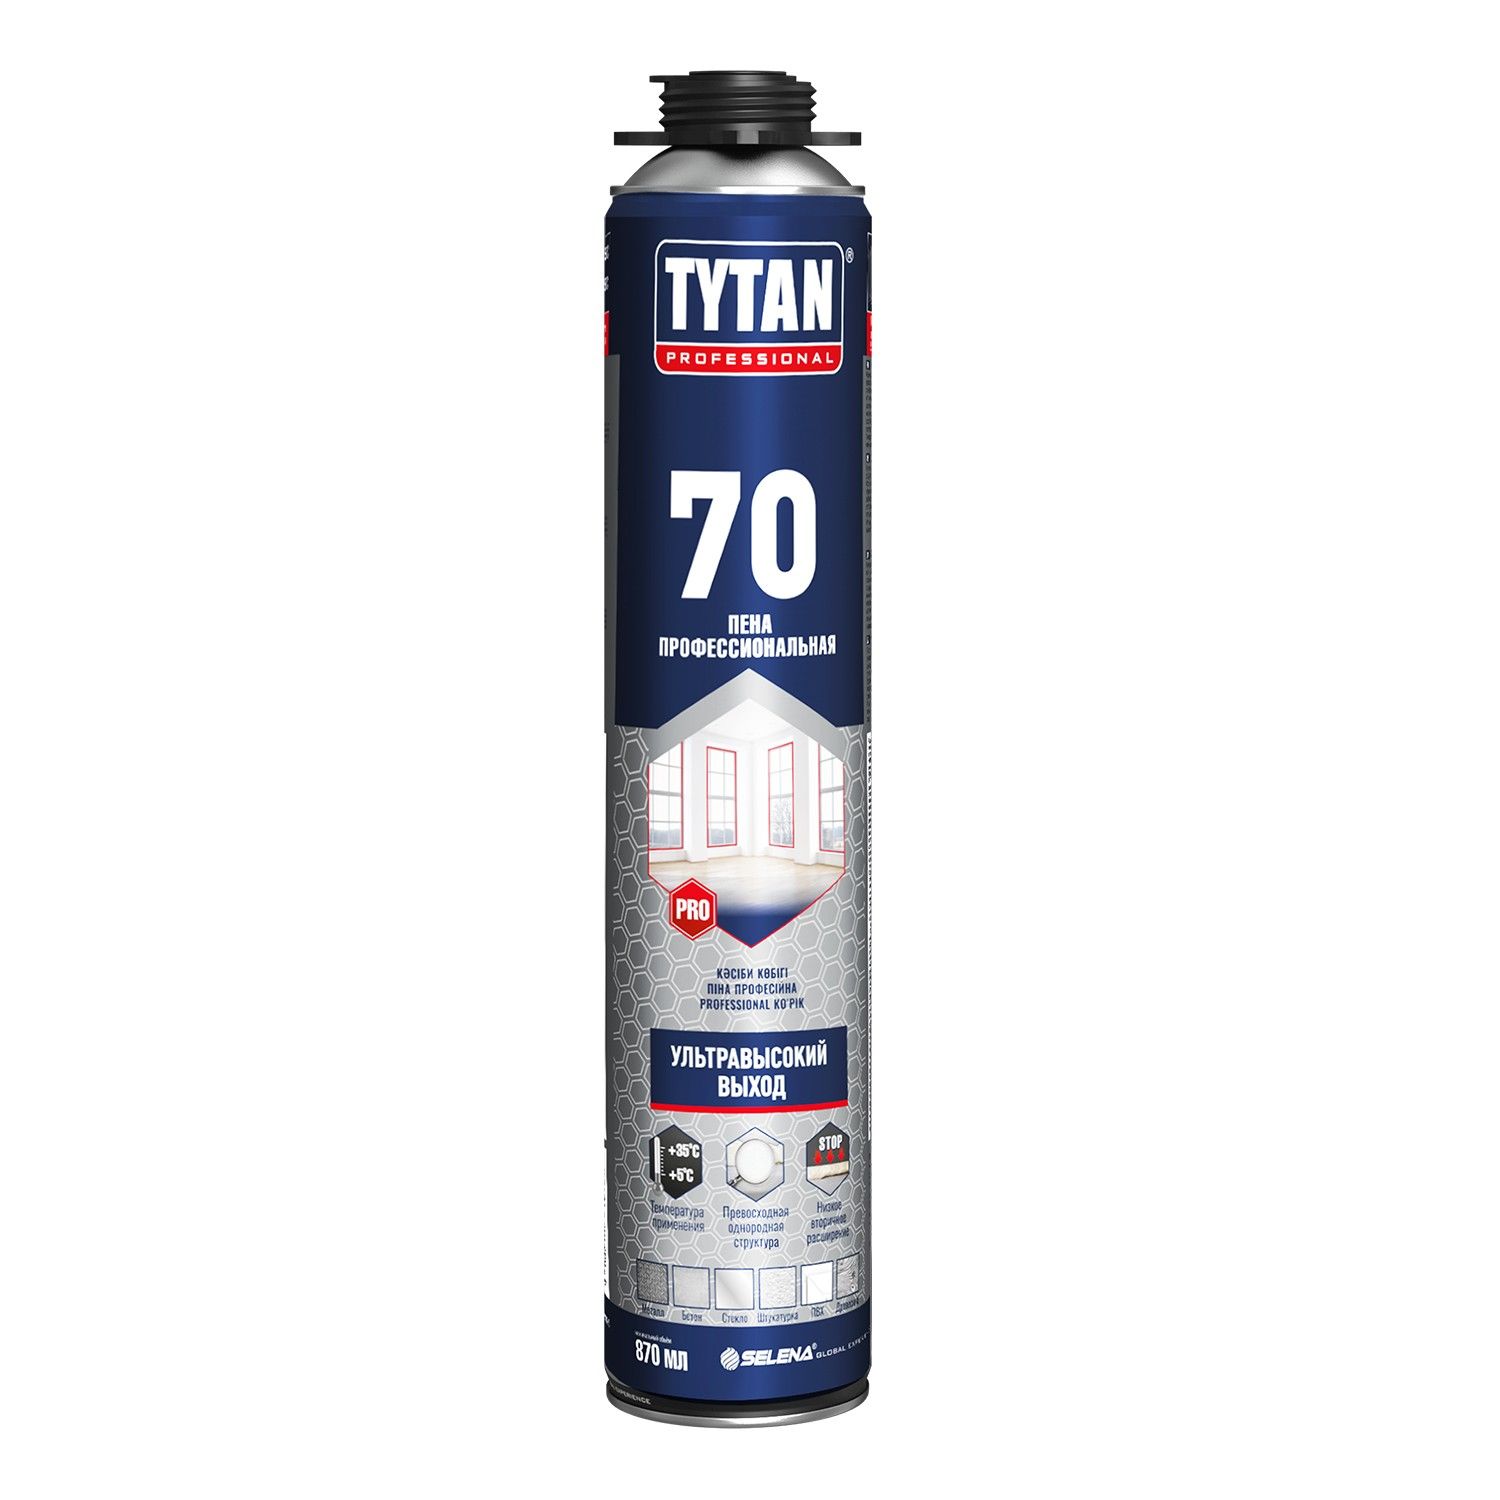 Пена профессиональная Tytan Professional Ultra 70, 870 мл